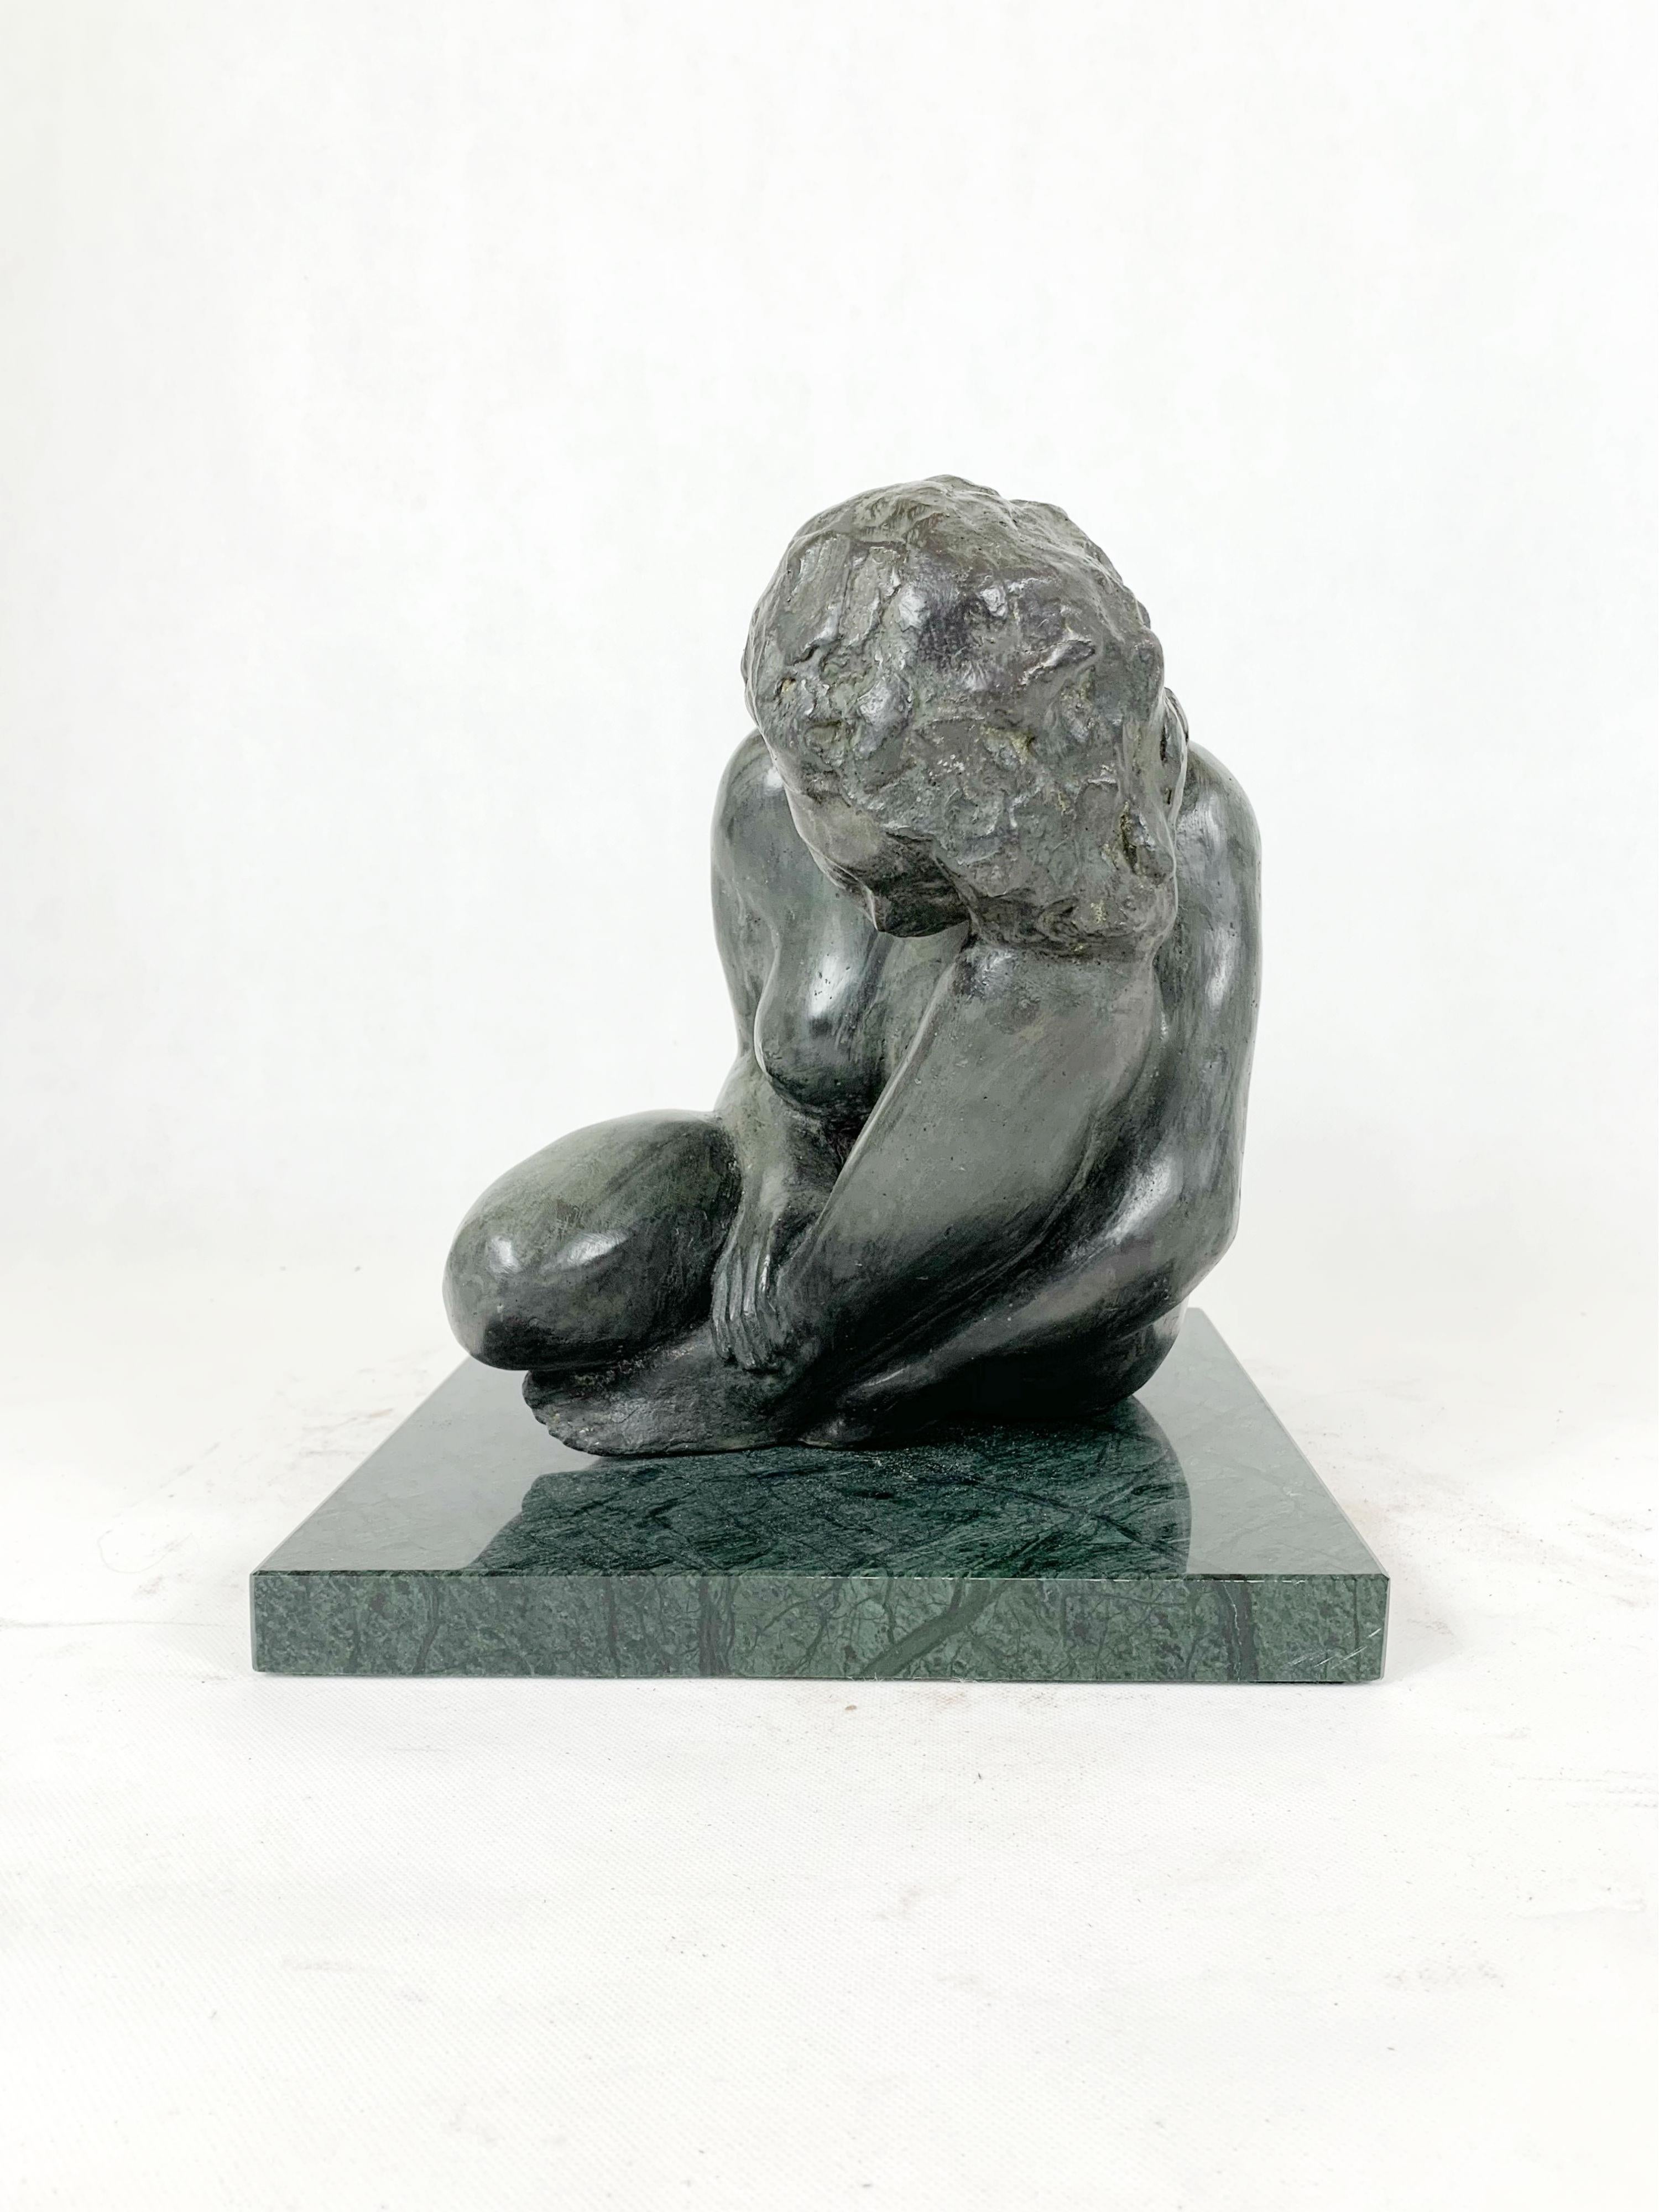 RYSZARD PIOTROWSKI (né en 1952) Sculpteur. Il est diplômé de l'Académie des Beaux-Arts de Varsovie. Ses œuvres comprennent des formes intimes et de petite taille en marbre, en bronze et en argent. Il est spécialisé dans le repoussage. Dans les